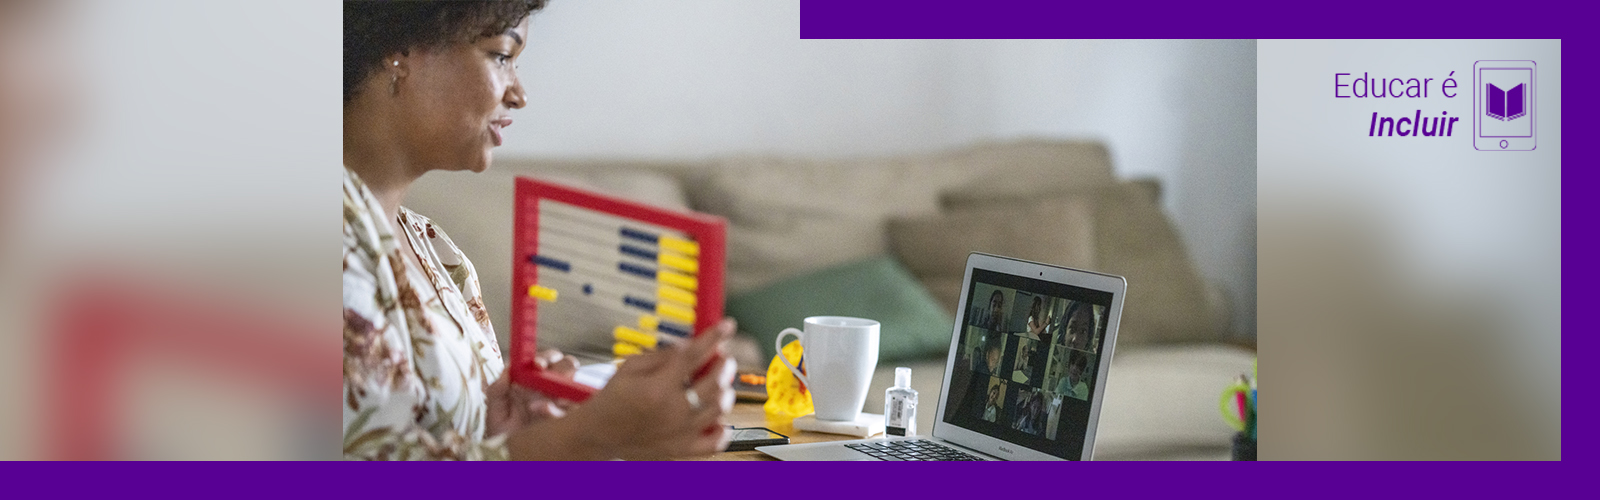 A imagem mostra uma mulher na sala de sua casa, sentada em frente a uma mesa onde está um computador, um ábaco e uma xícara de porcelana. Ela está olhando para tela e interagindo com um grupo de pessoas em uma videoconferência